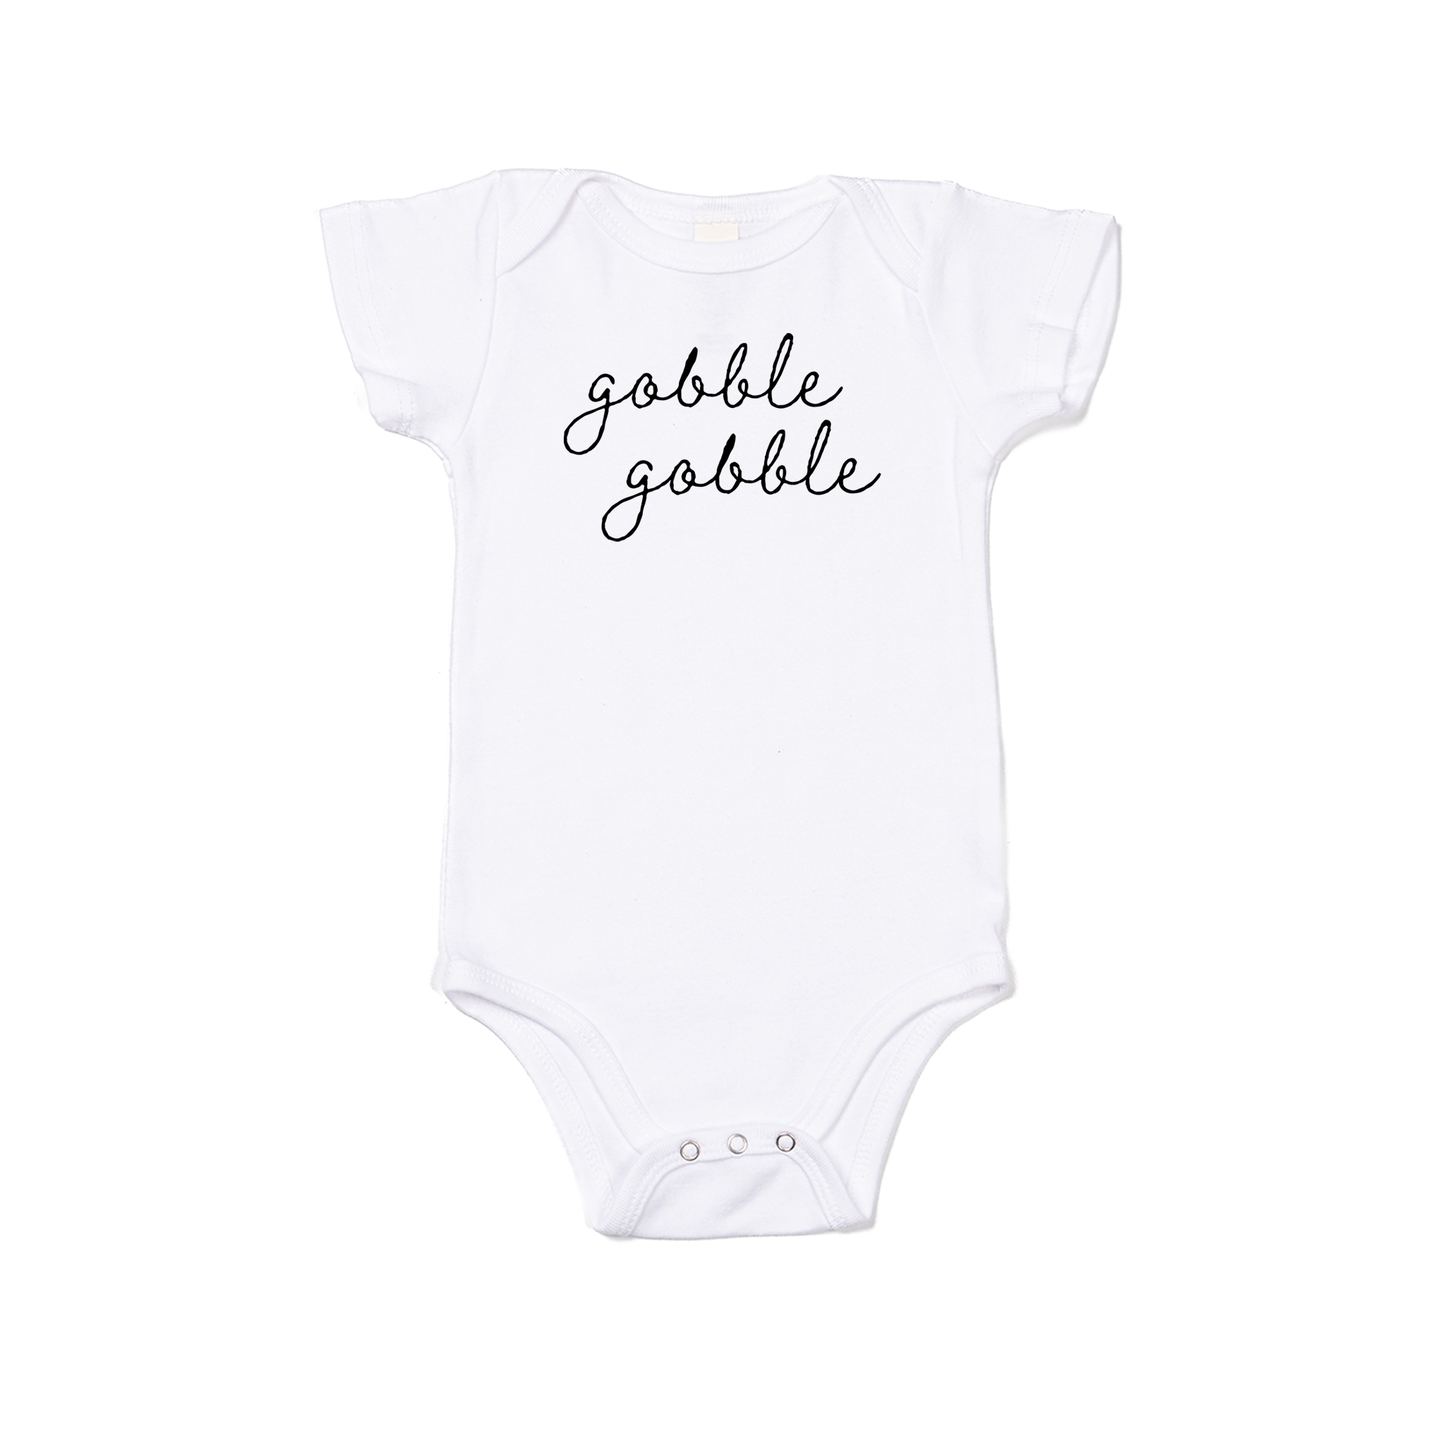 Gobble Gobble - Bodysuit (White, Short Sleeve)